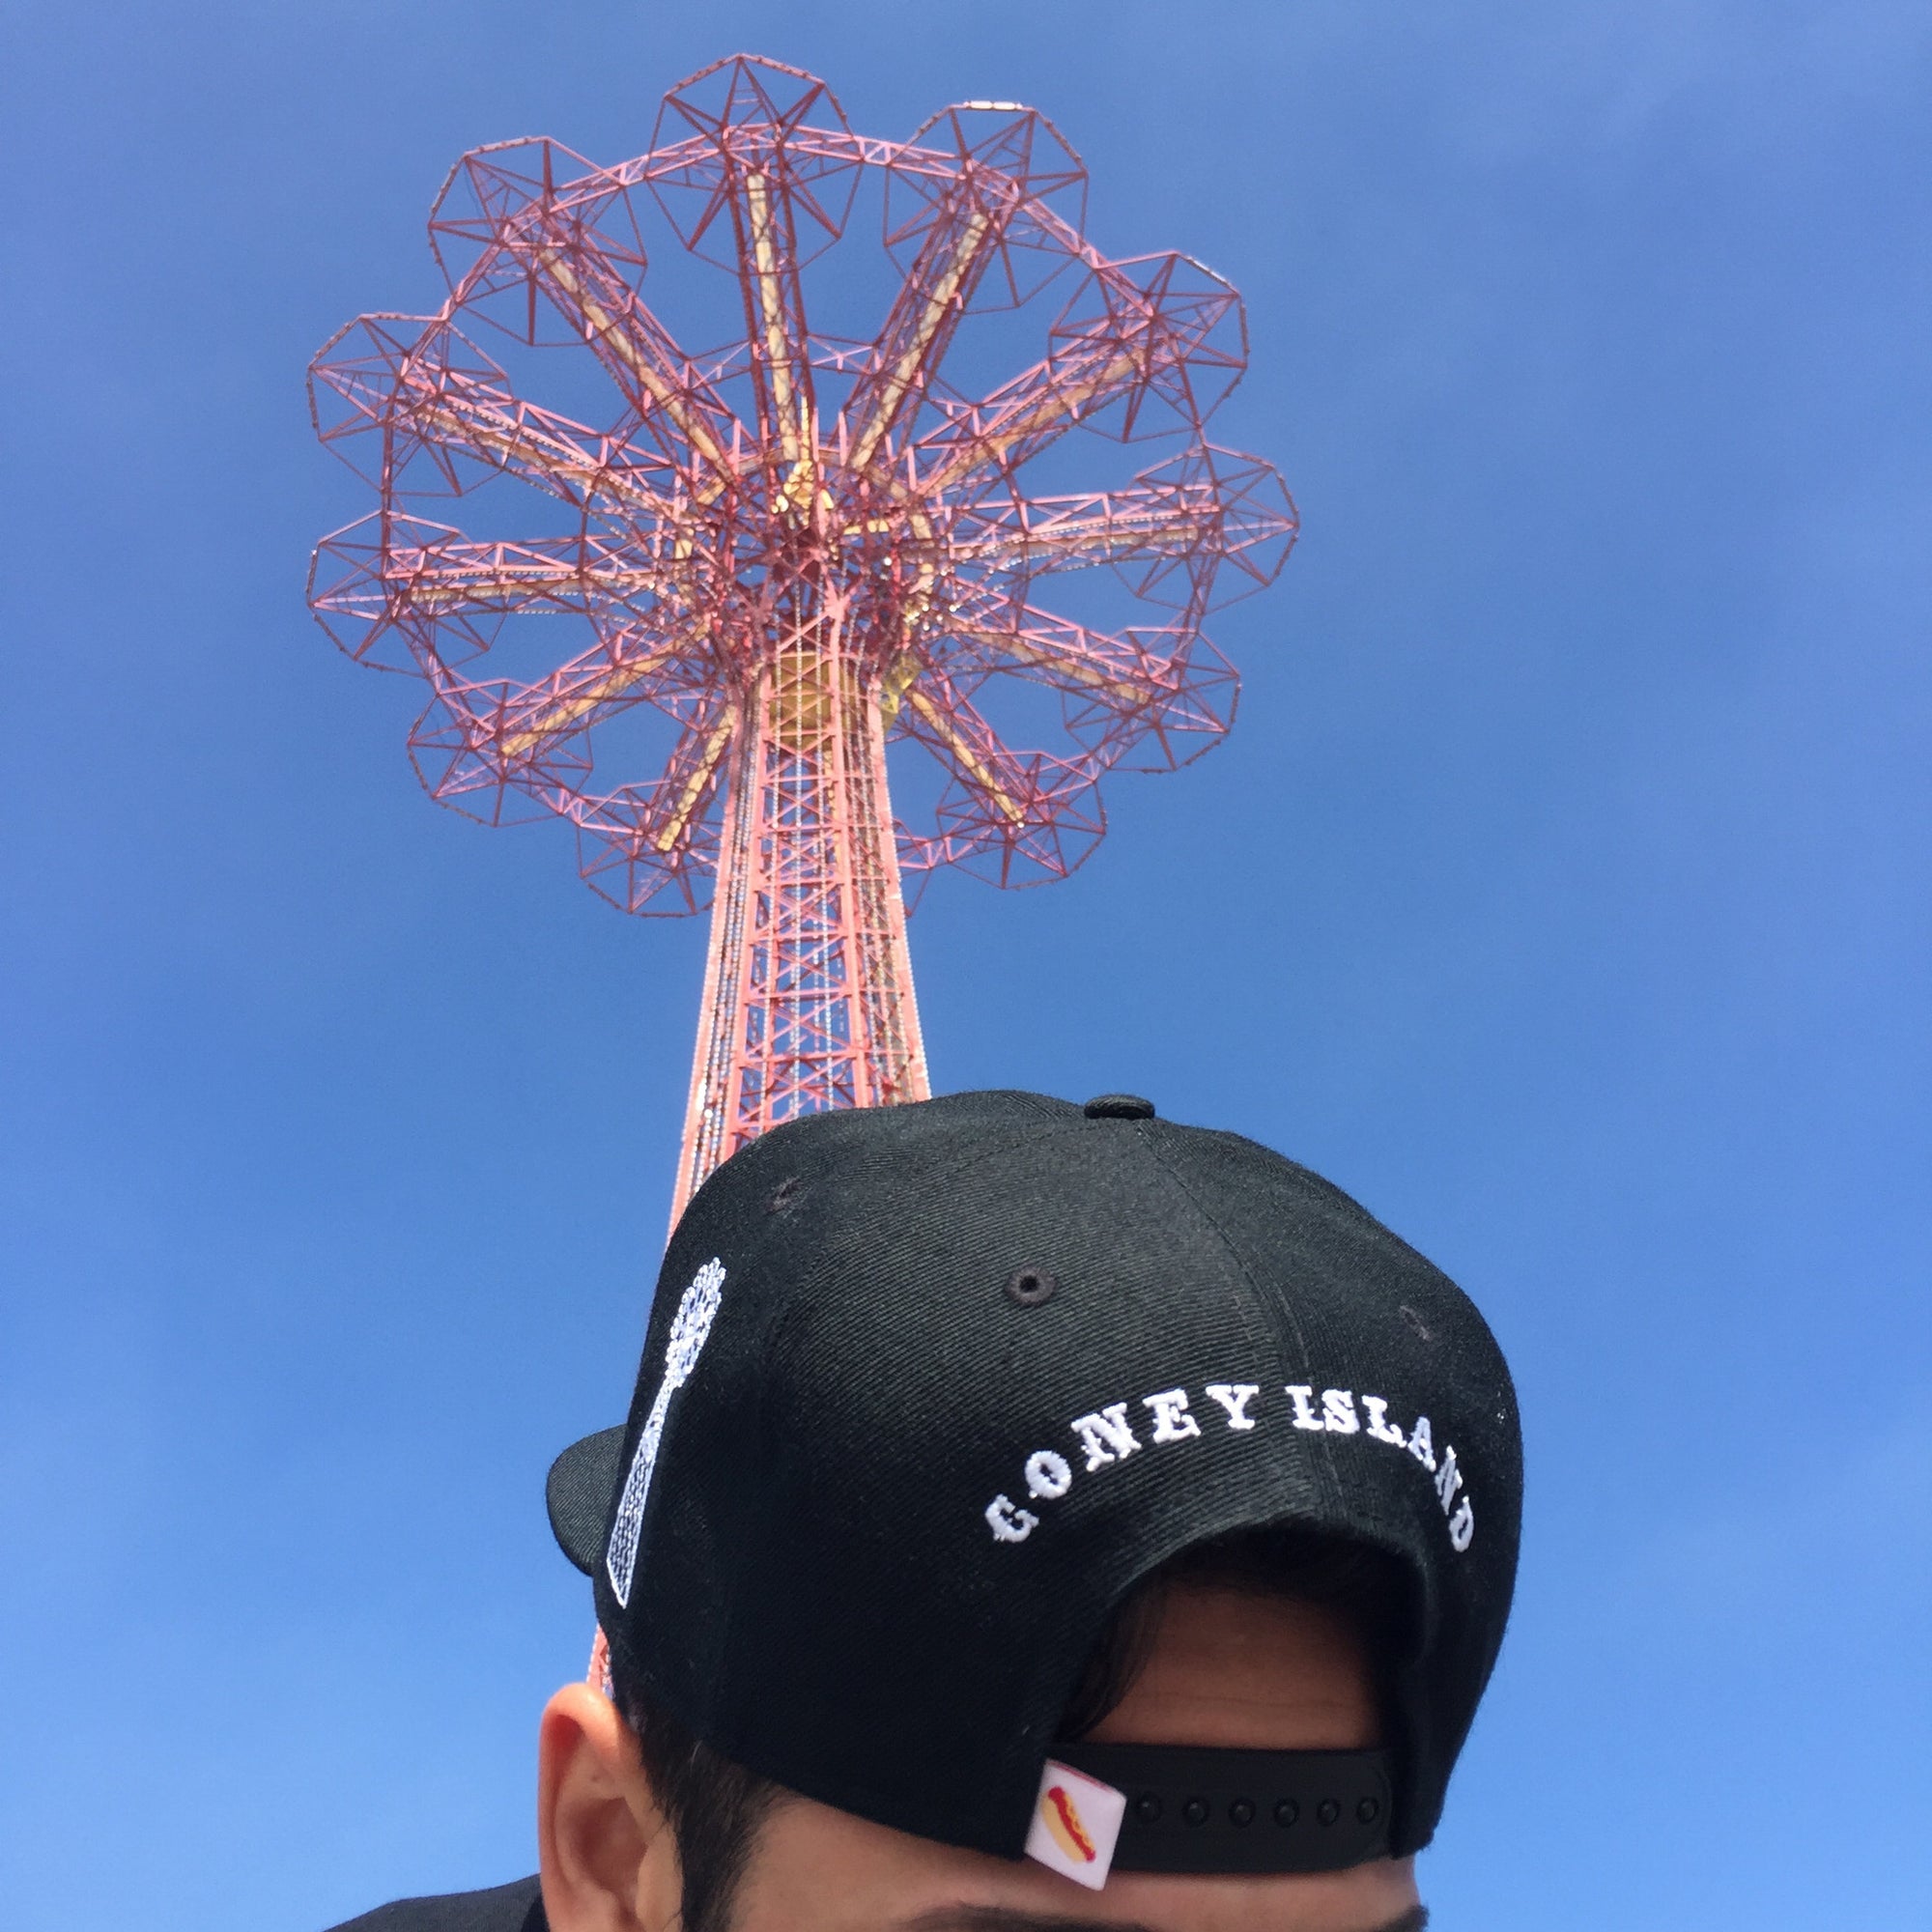 FNDQ Brooklyn Bound Coney Island Snapback Hat